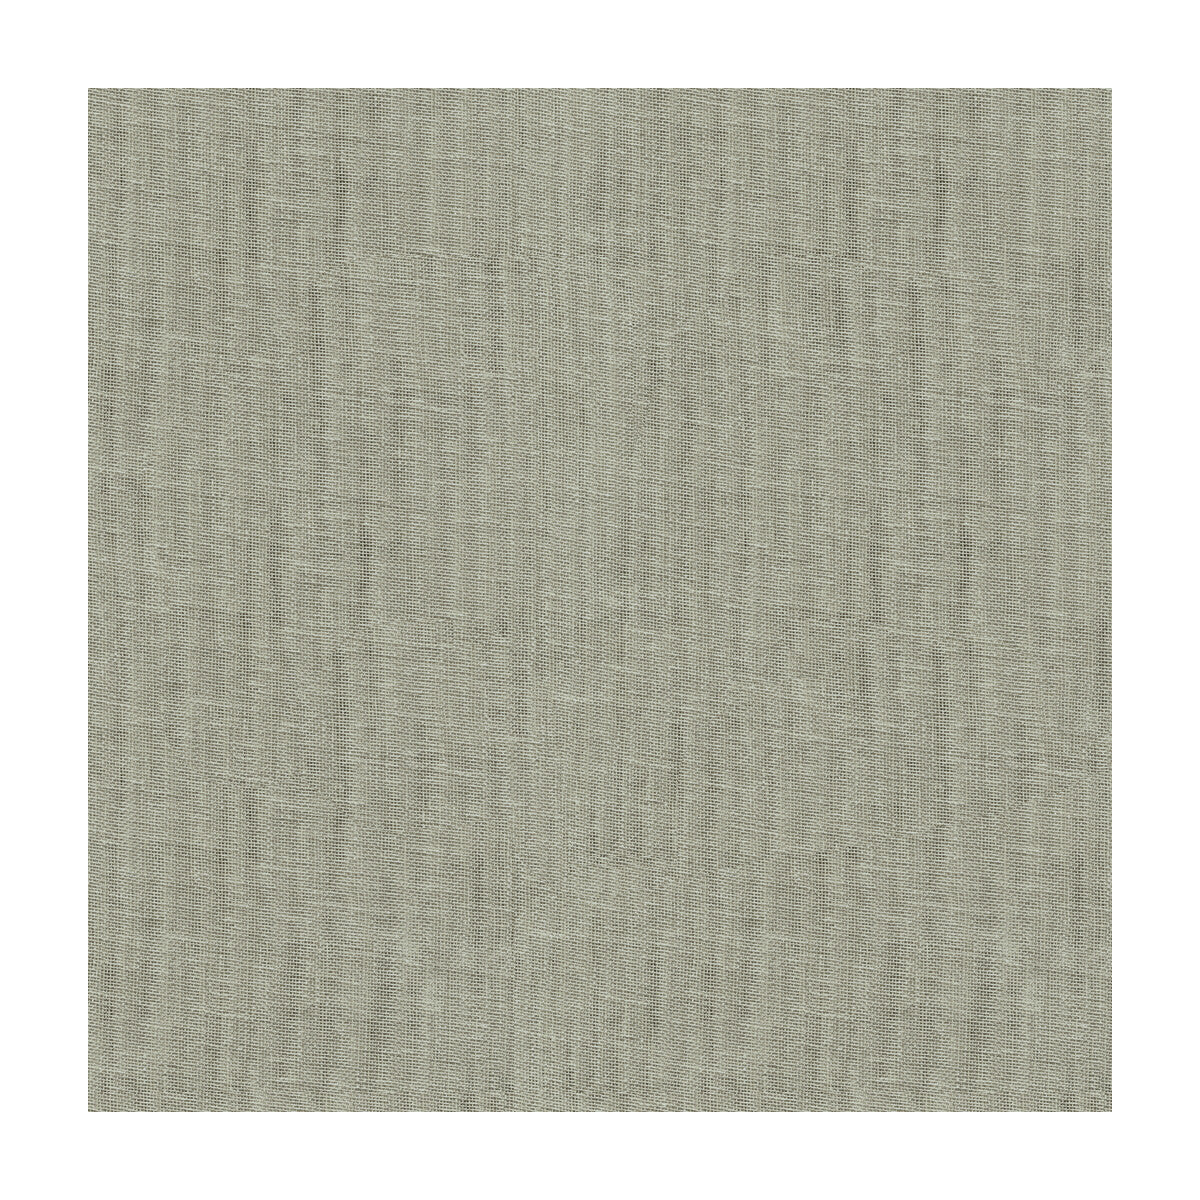 Kravet Basics fabric in 4112-11 color - pattern 4112.11.0 - by Kravet Basics